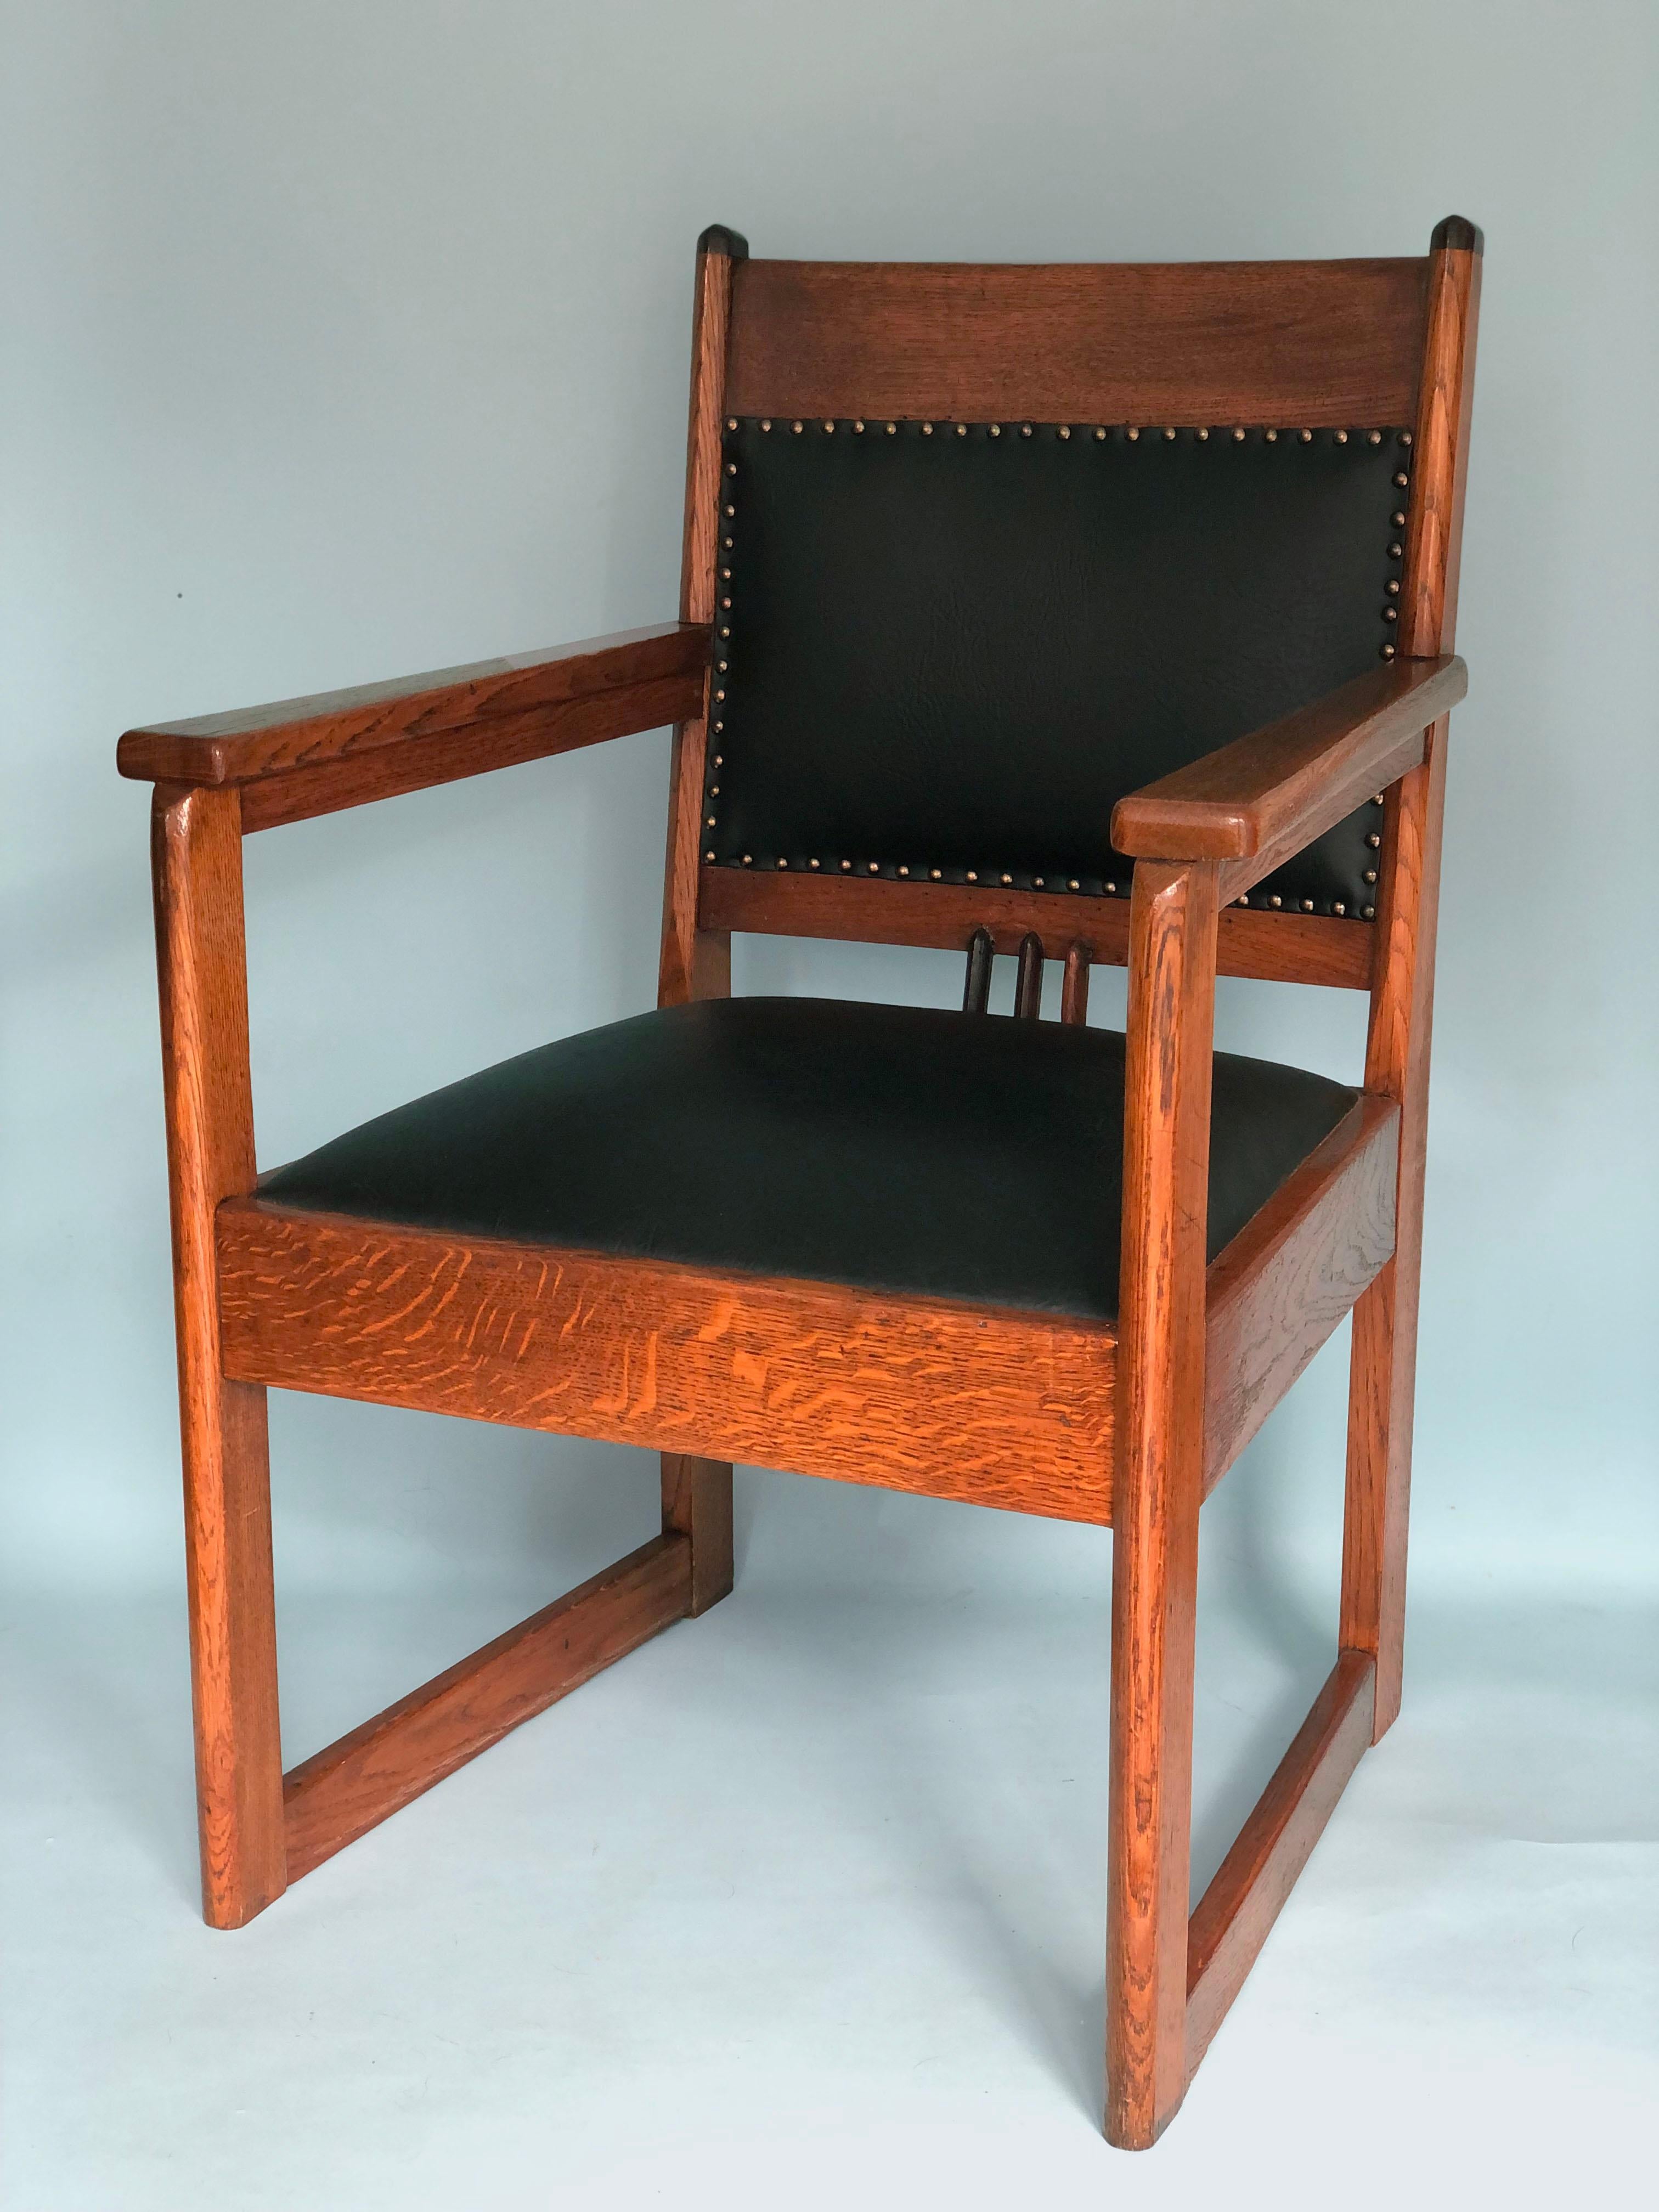 2 fauteuils Art Déco en chêne des années 1920. Conçu et fabriqué pendant la période de l'école de Haagse, probablement par Hendrik Wouda. Les chaises, lourdes et robustes, sont en très bon état. Le simili cuir de l'assise et du dossier est fixé par